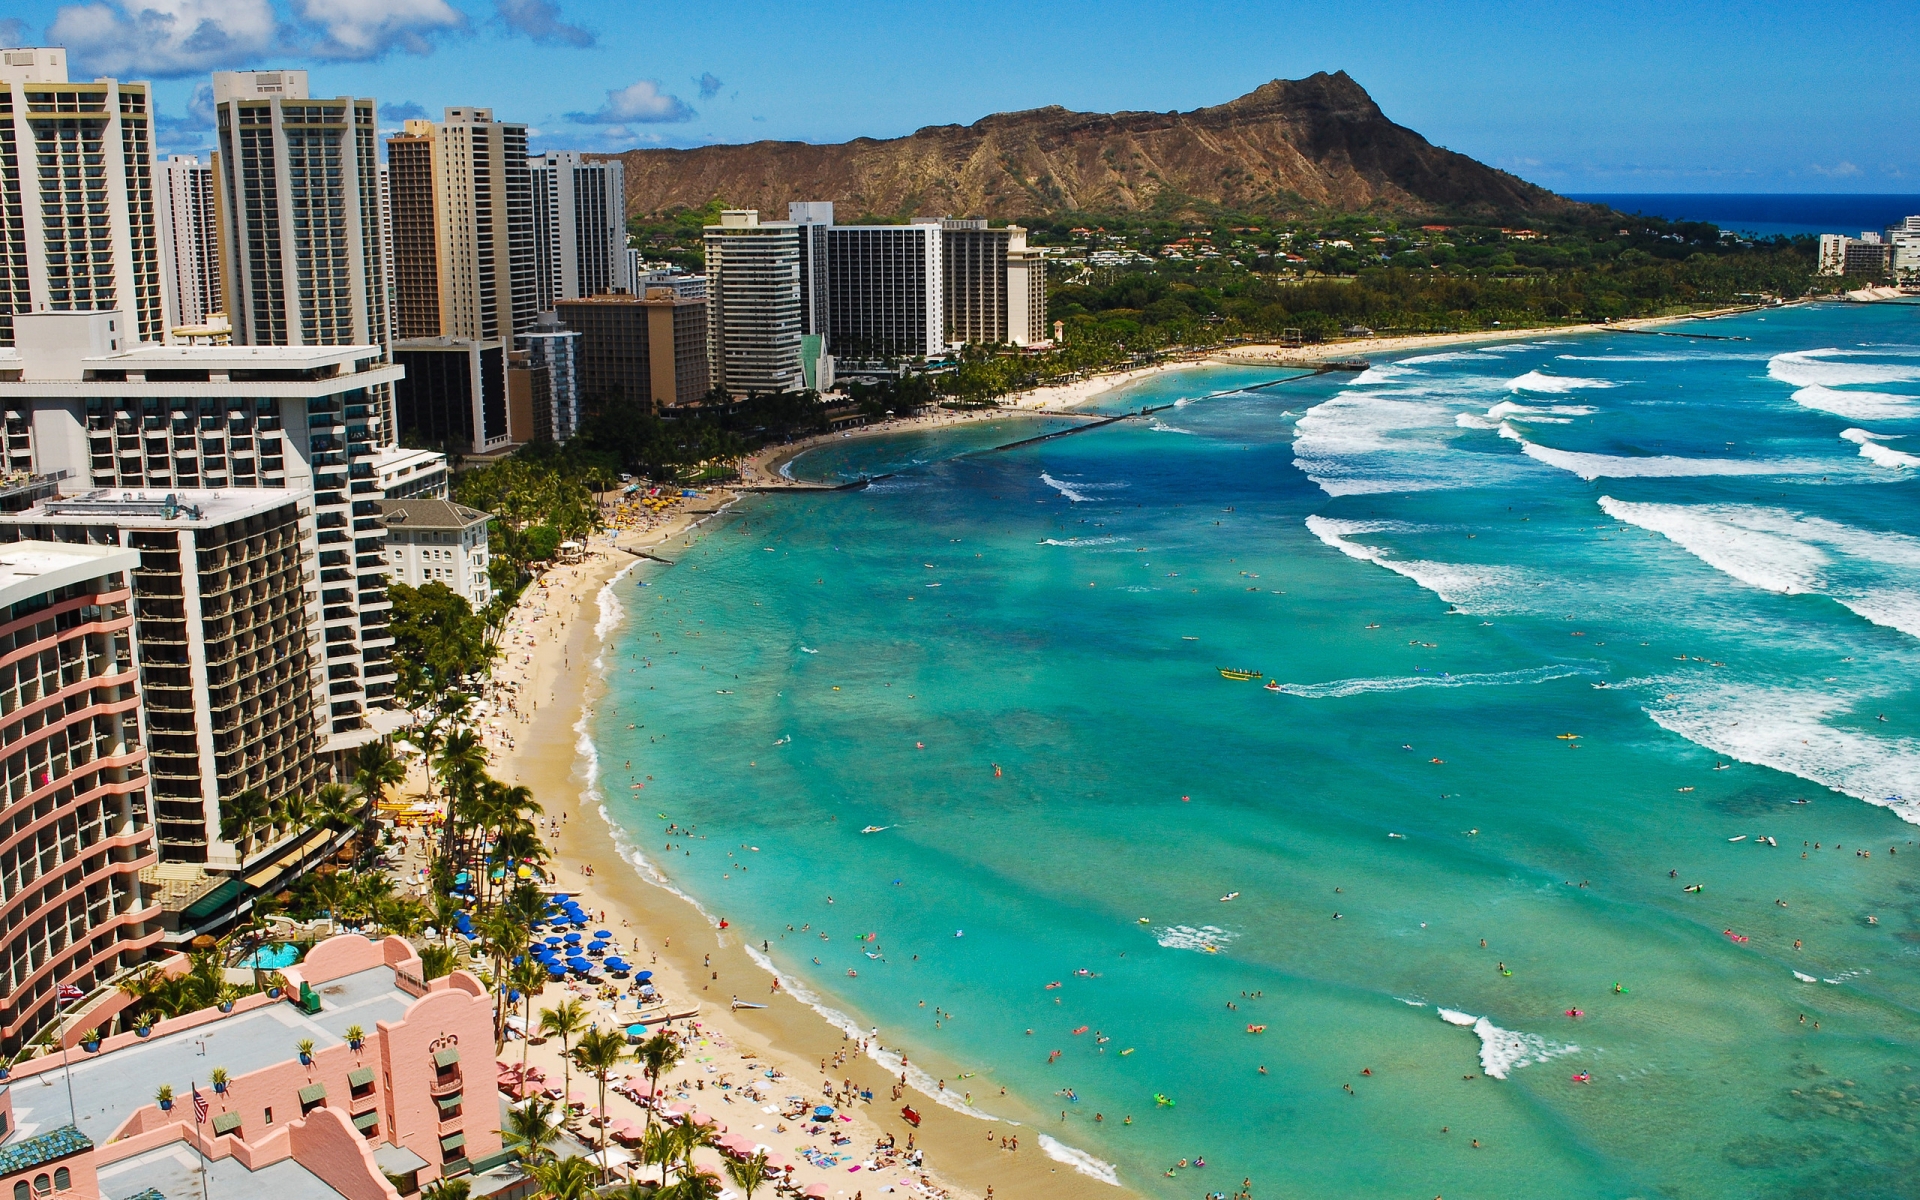 Waikiki Beach Hawaii, for 1920 x 1200 widescreen resolution